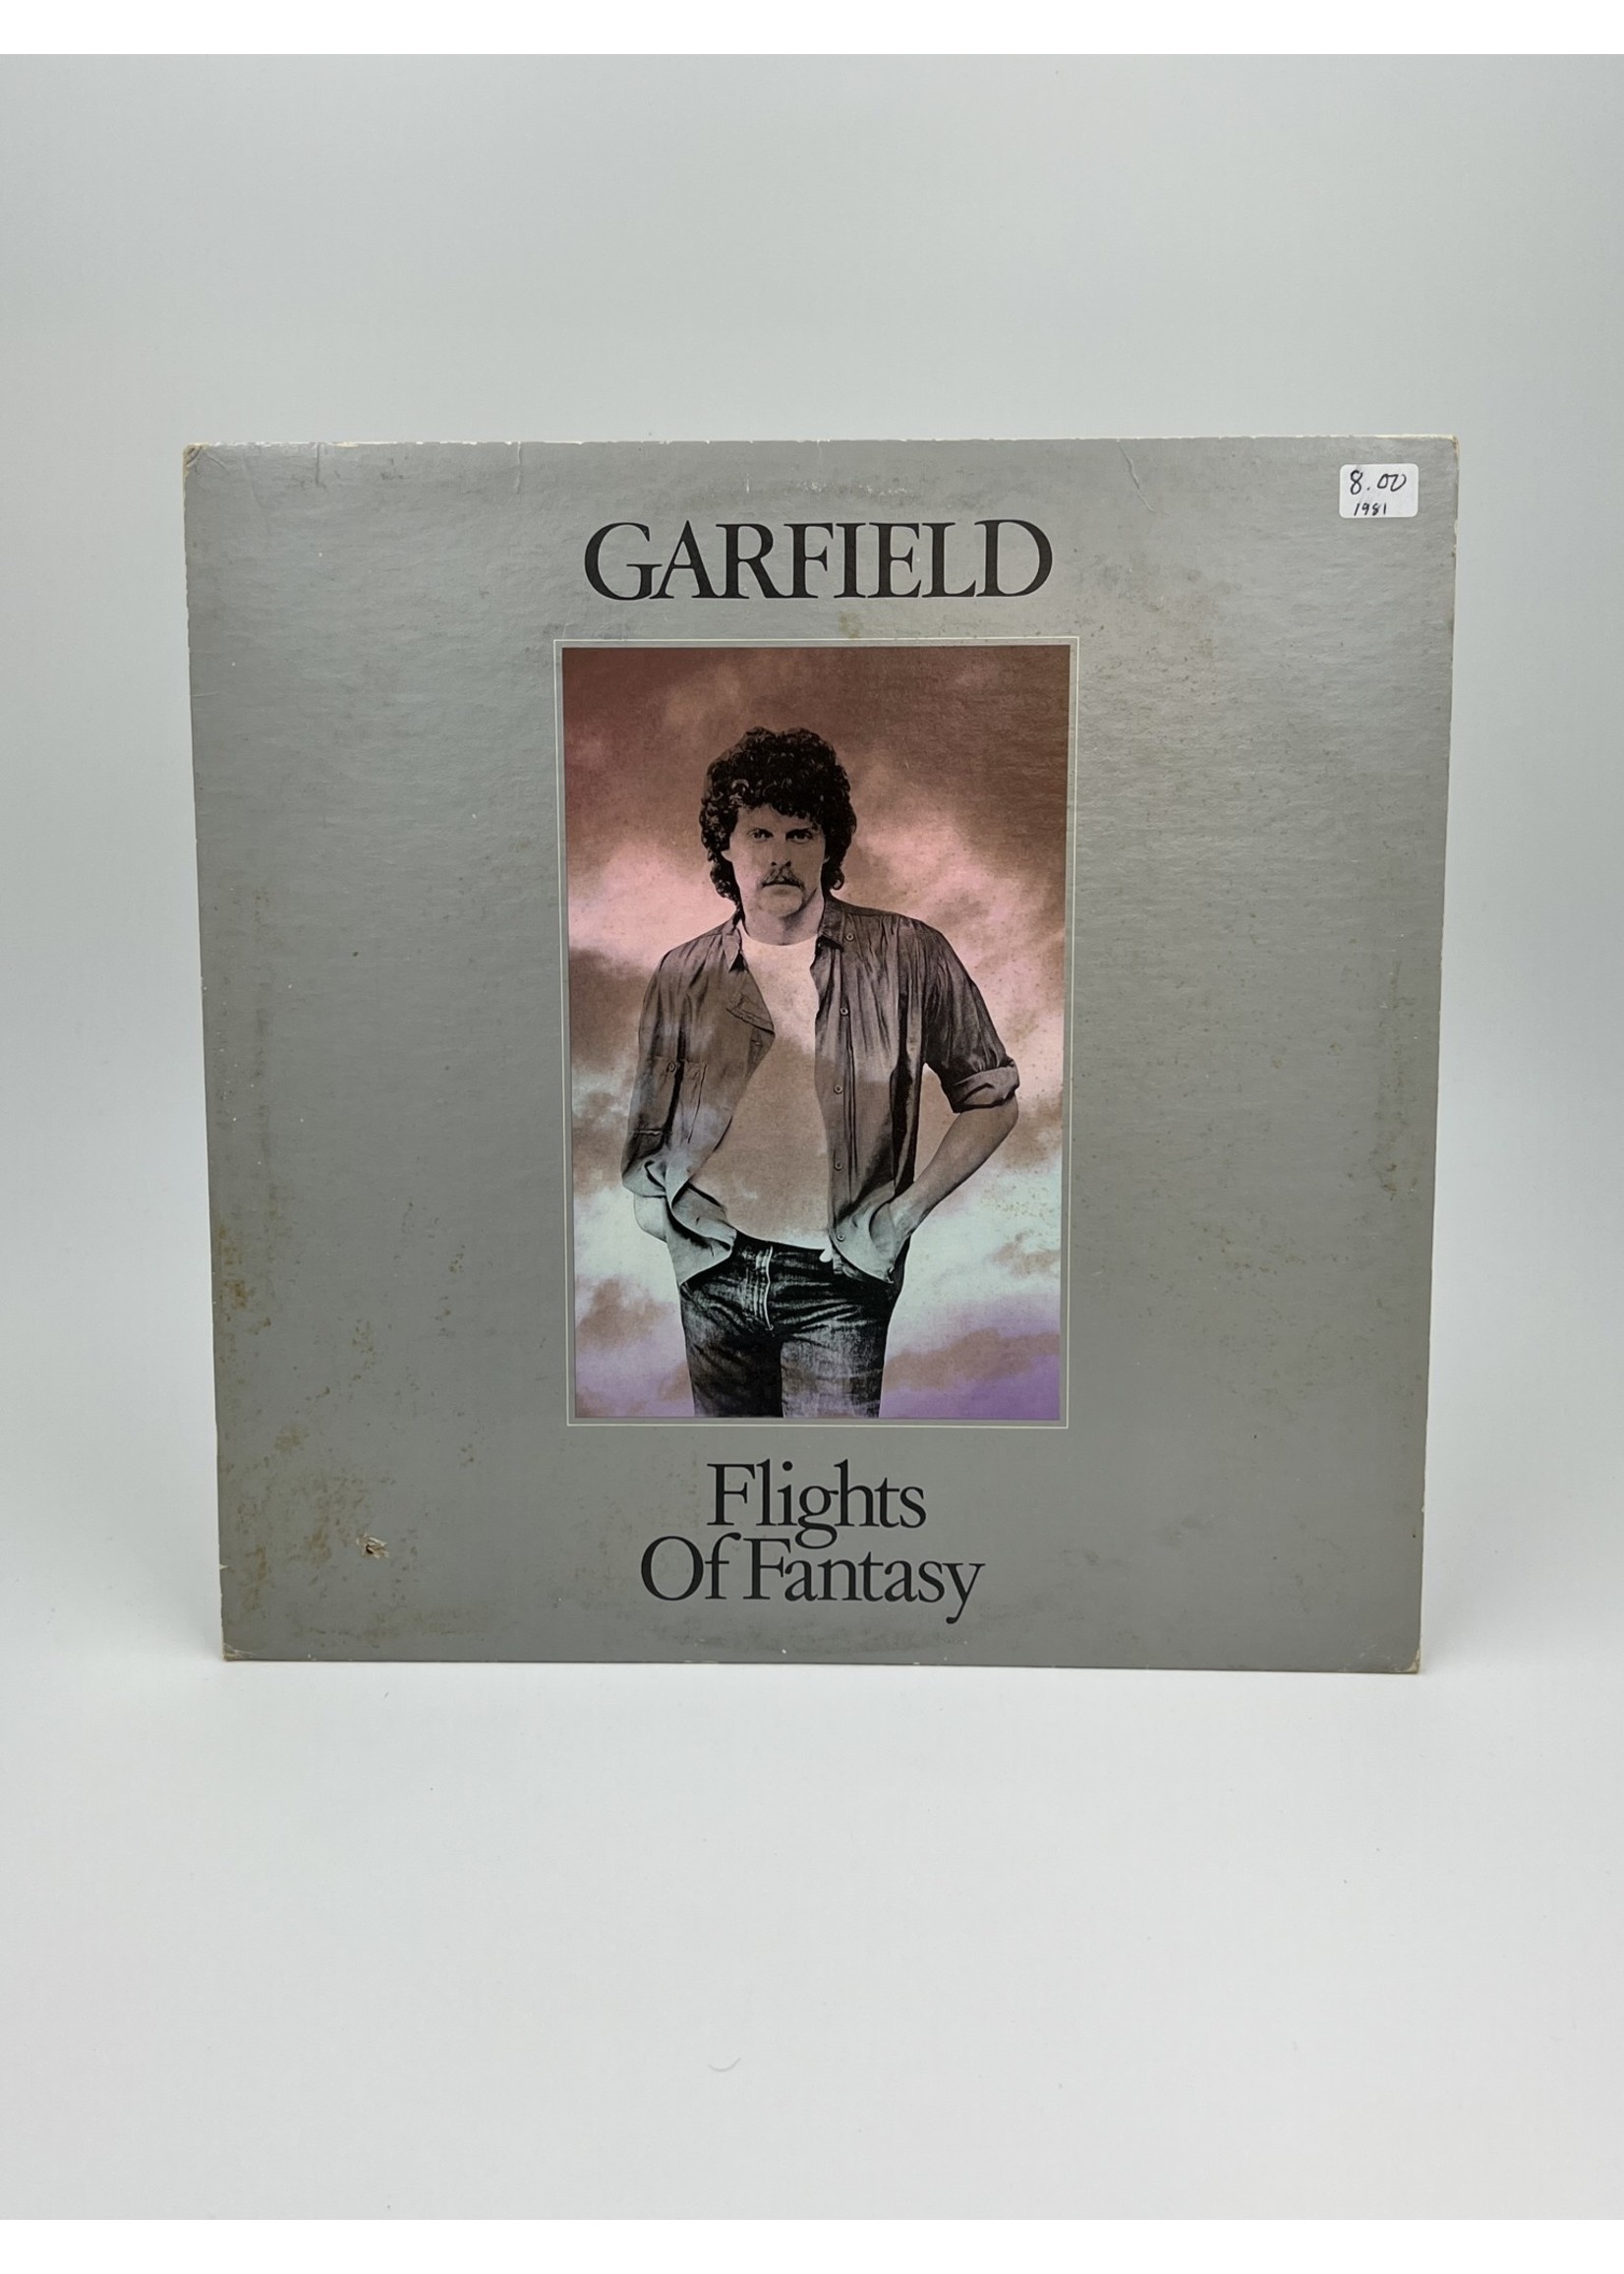 LP Garfield Flights of Fantasy LP Record